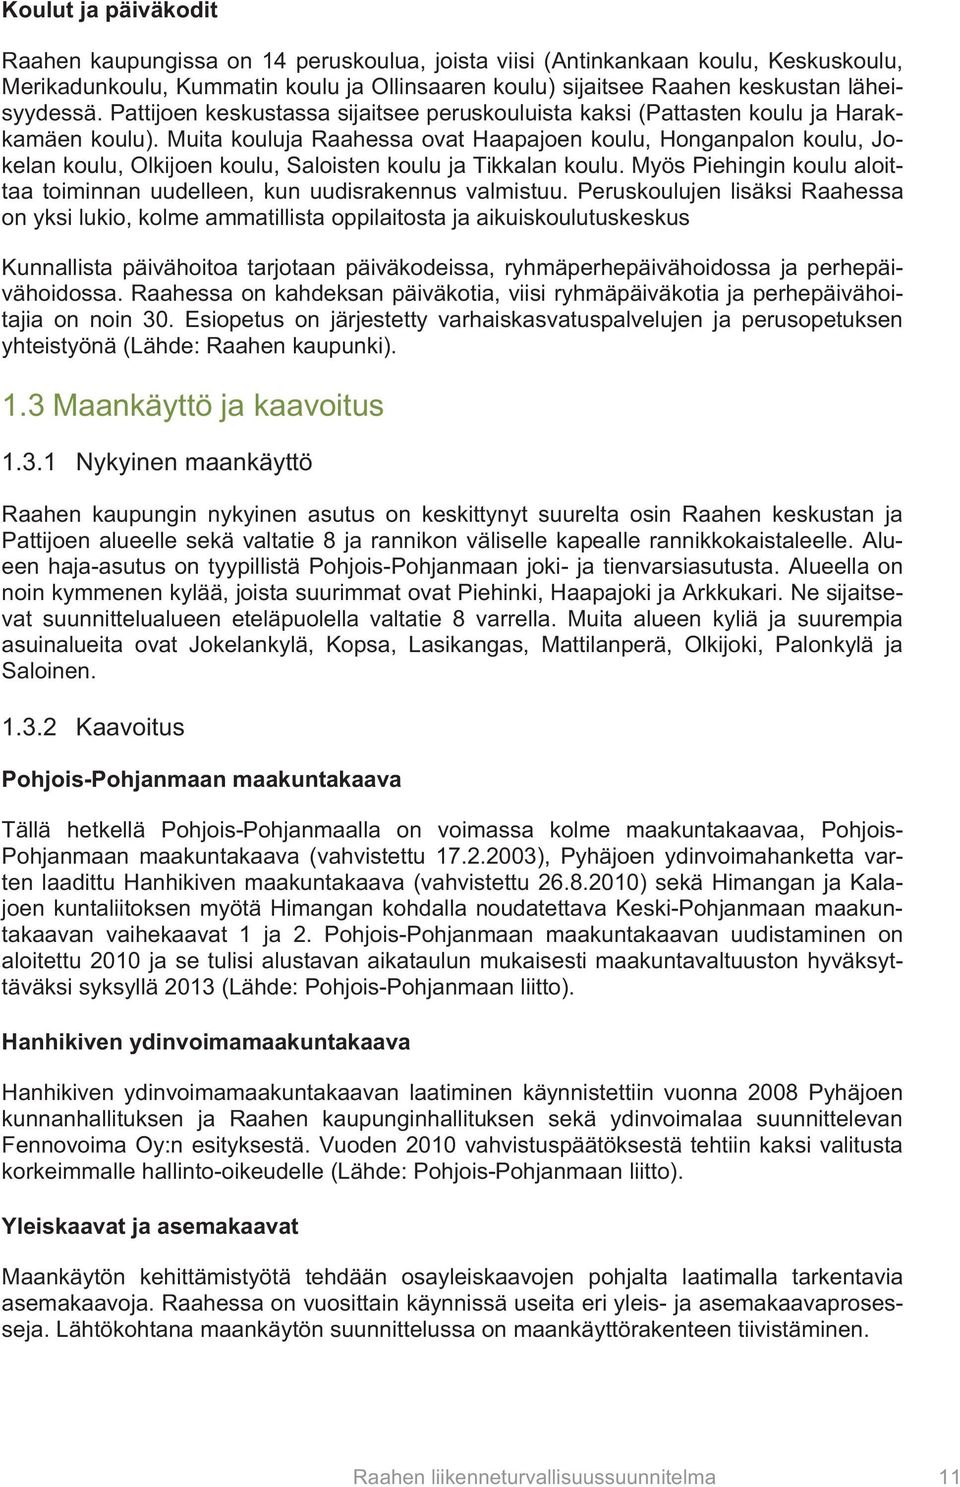 Muita kouluja Raahessa ovat Haapajoen koulu, Honganpalon koulu, Jokelan koulu, Olkijoen koulu, Saloisten koulu ja Tikkalan koulu.